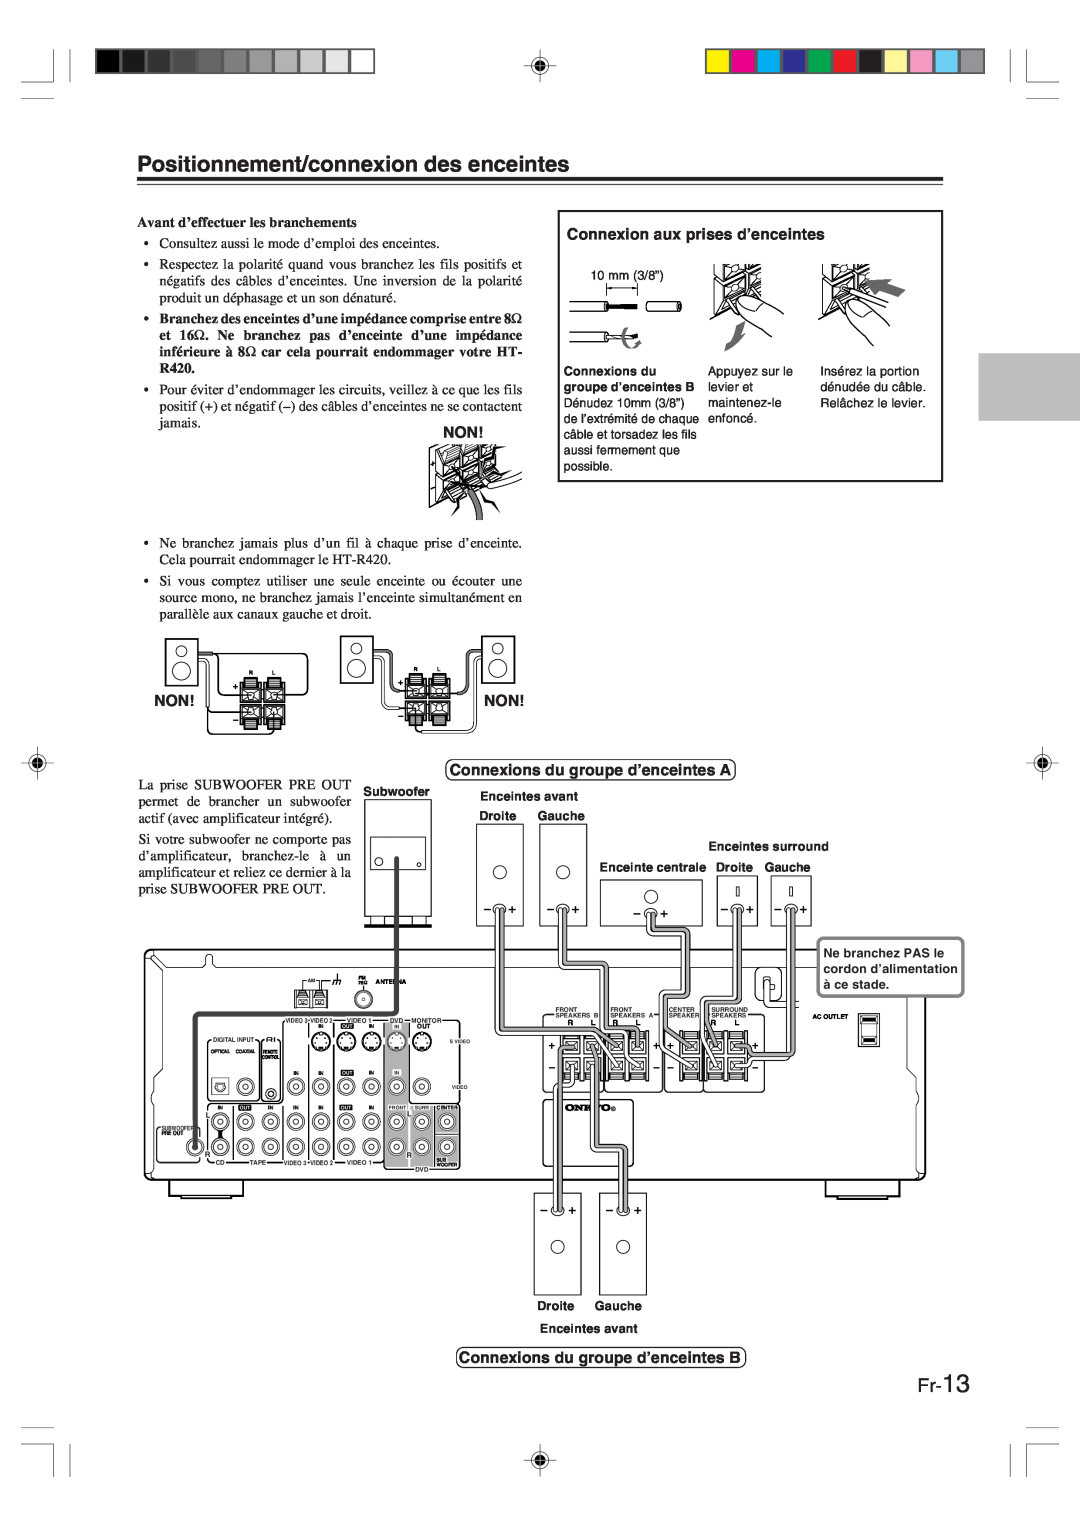 Onkyo HT-R420 manual Positionnement/connexion des enceintes, Fr-13, Avant d’effectuer les branchements 